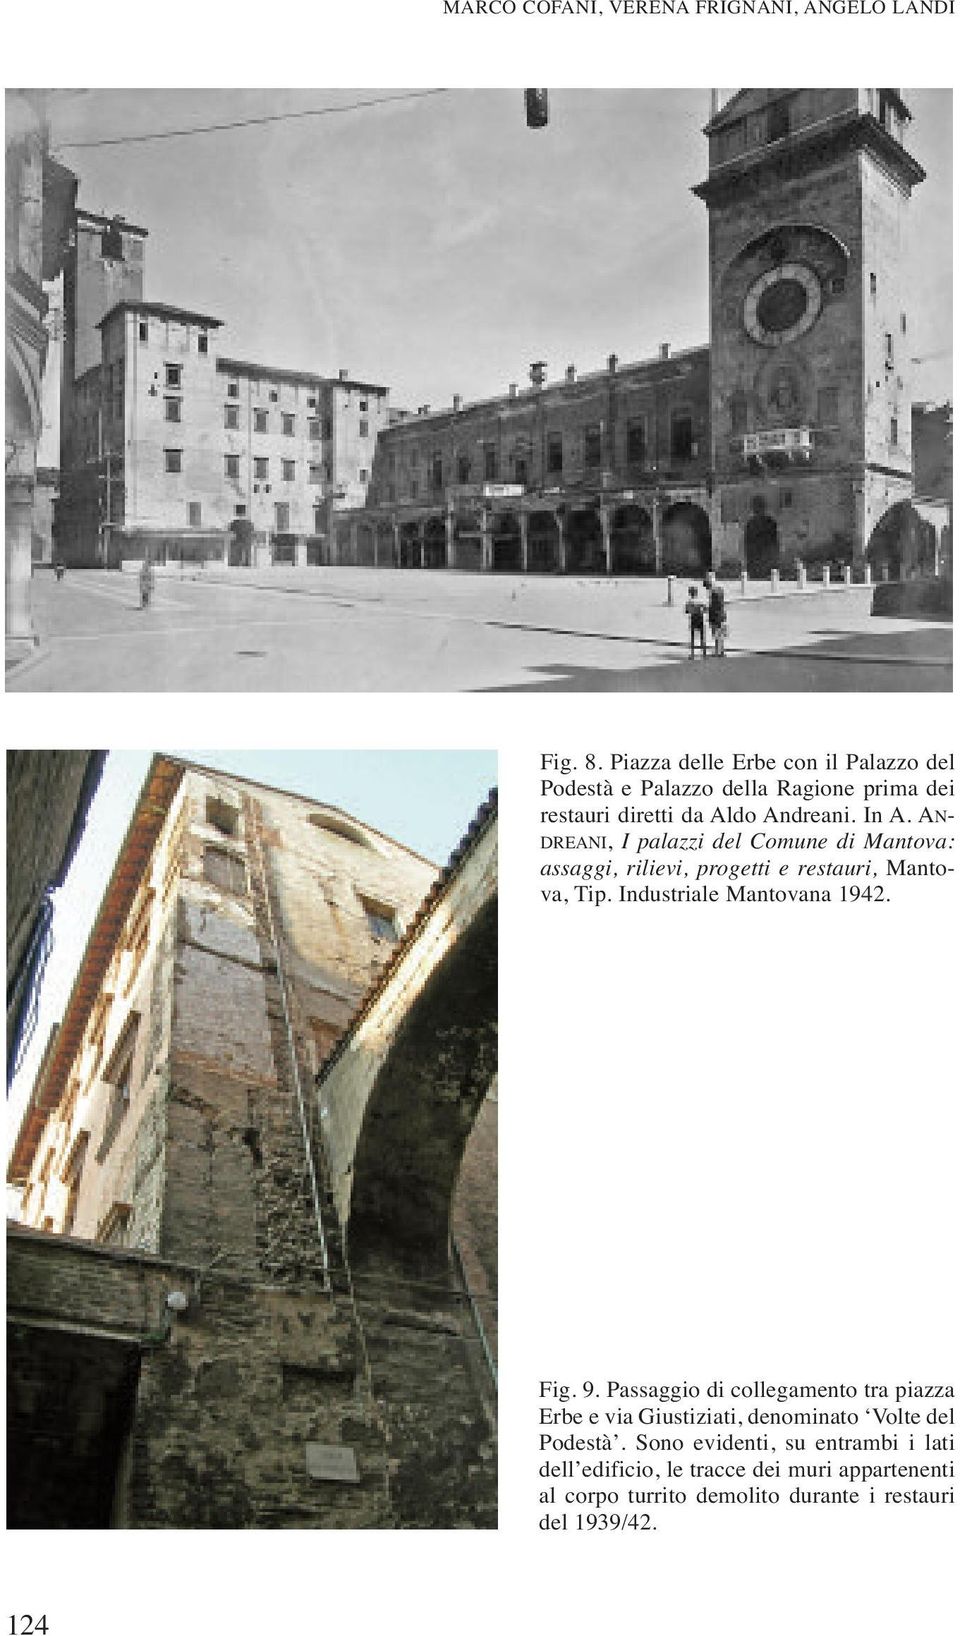 AN- DREANI, I palazzi del Comune di Mantova: assaggi, rilievi, progetti e restauri, Mantova, Tip. Industriale Mantovana 1942. Fig. 9.